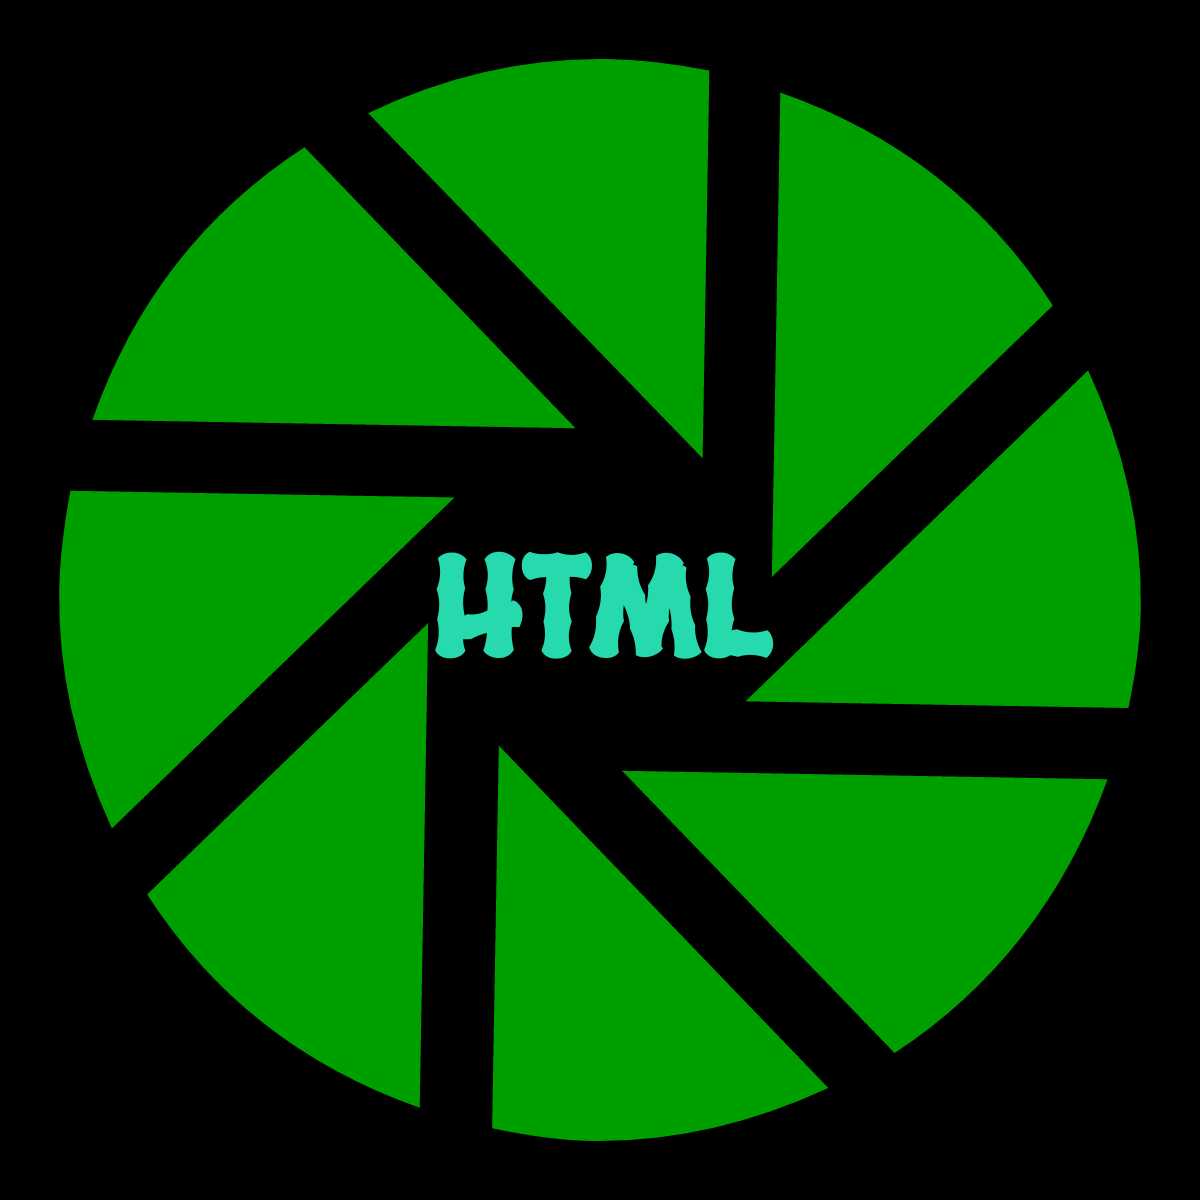 HTMLԴ鿴1.7İ